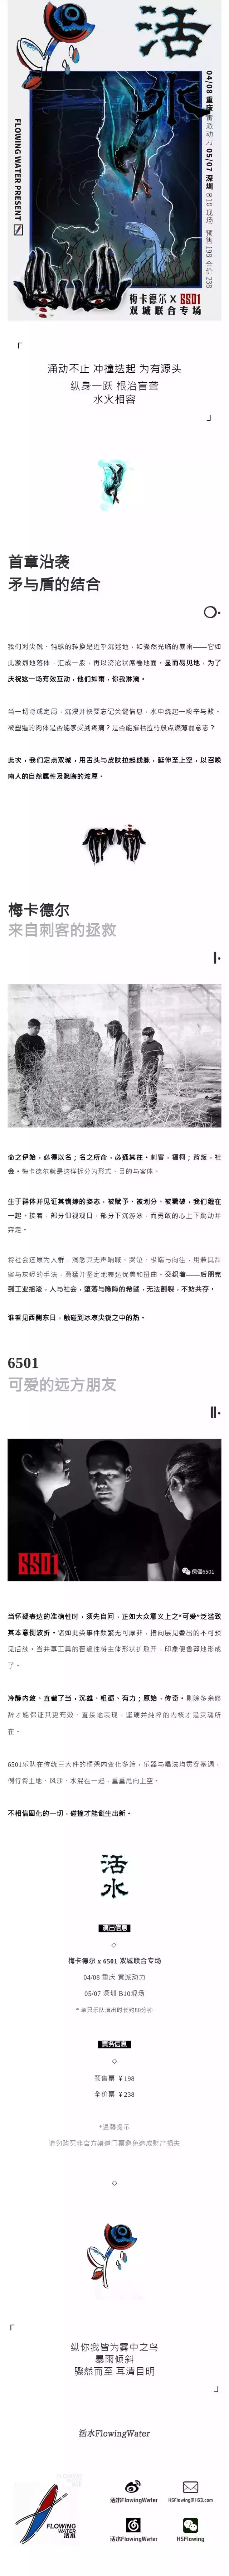 2022「活水」梅卡德尔 x 6501双城联合专场-重庆站